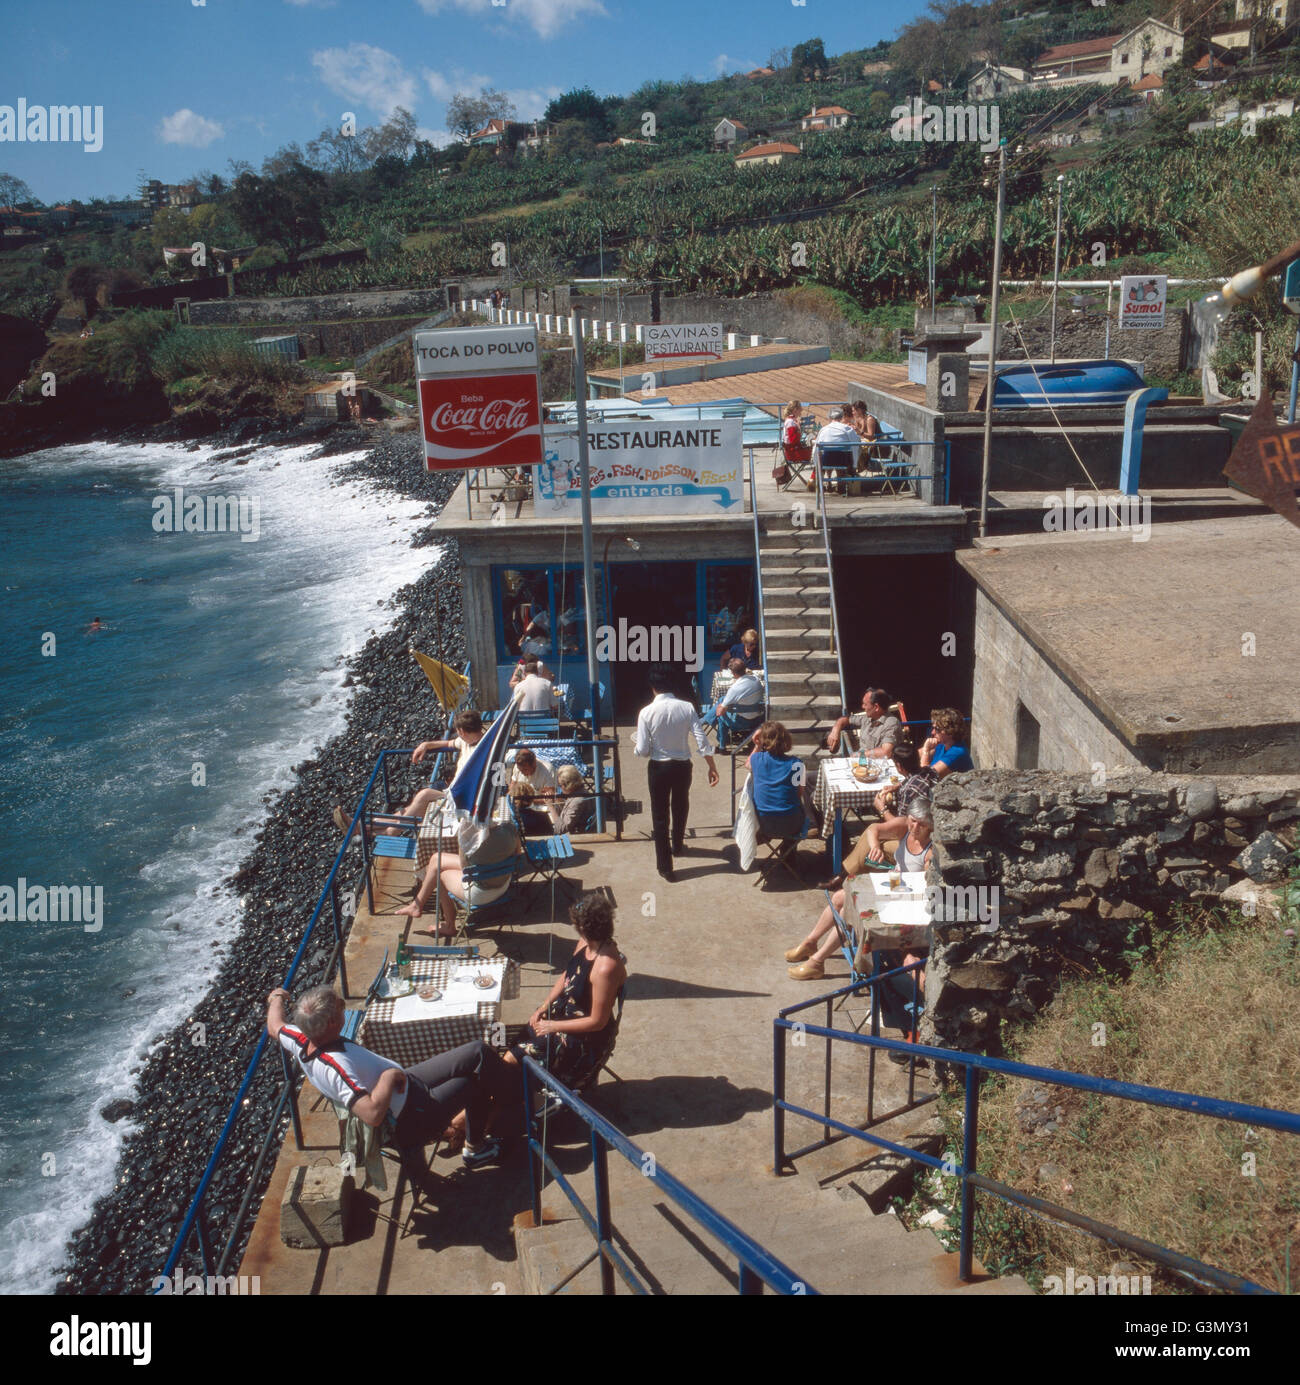 Mittagessen im Fischrestaurant Toca do Polvo am Strand von Funchal, Madeira, Portugal 1980. Lunch in the fish restaurant Toca do Polvo at the beach of Funchal, Madeira, Portugal 1980. Stock Photo